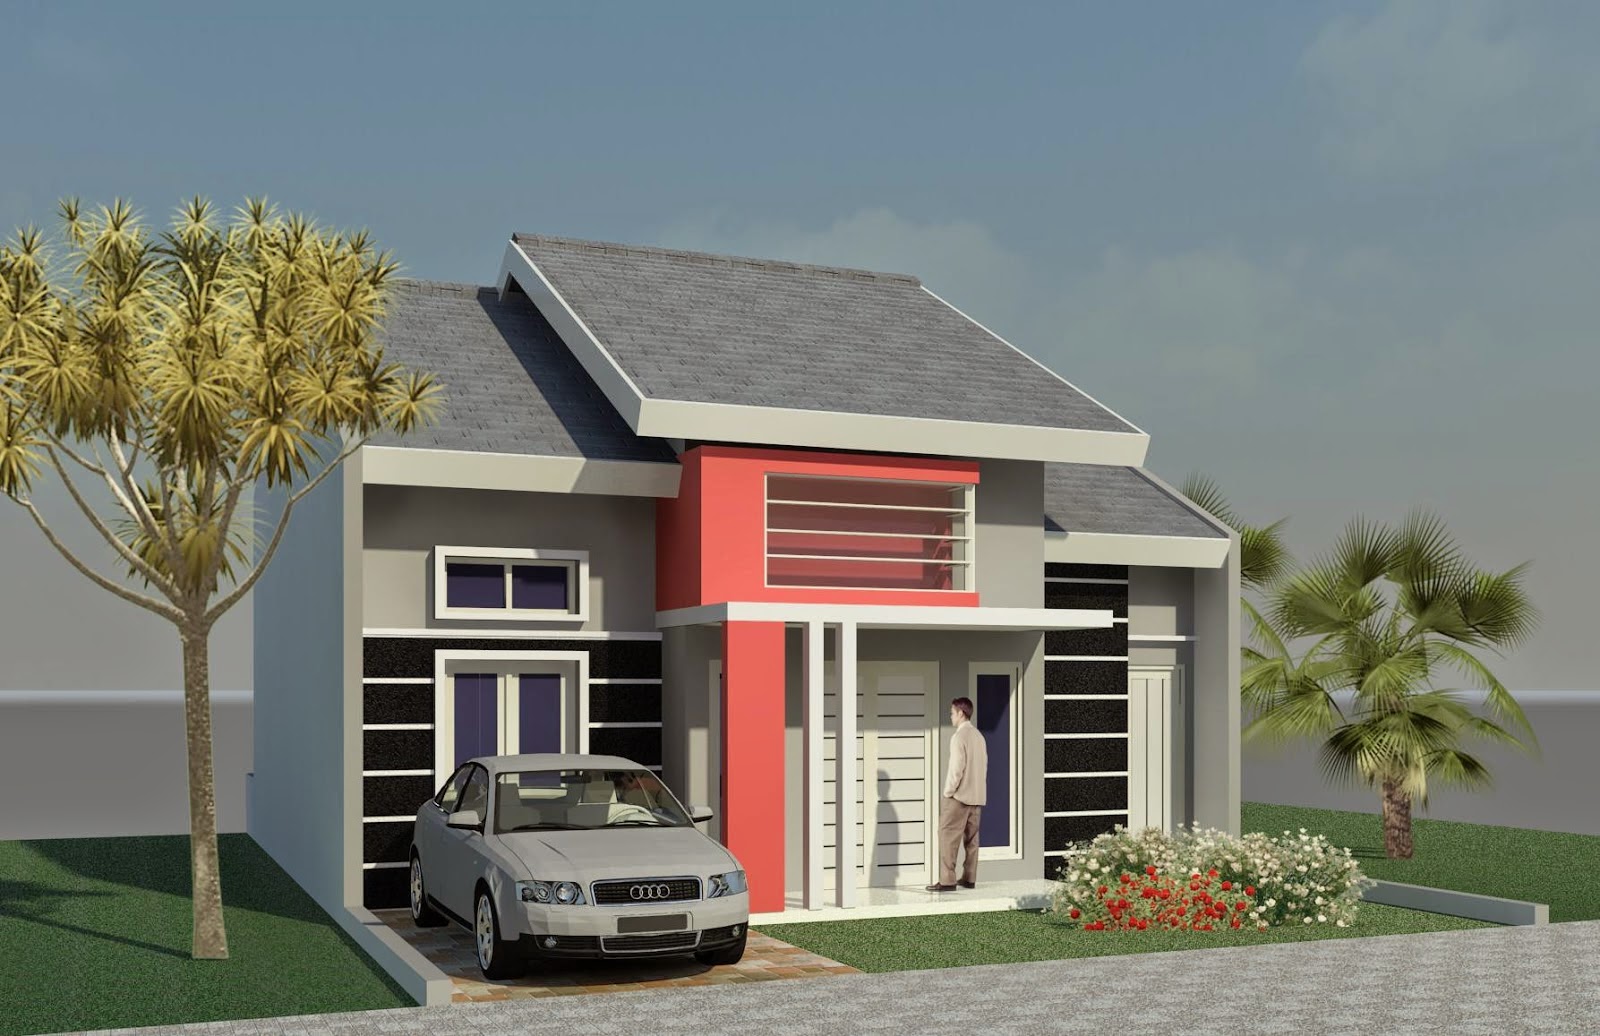 Gambar Desain Model Rumah Minimalis Sederhana Type 21 